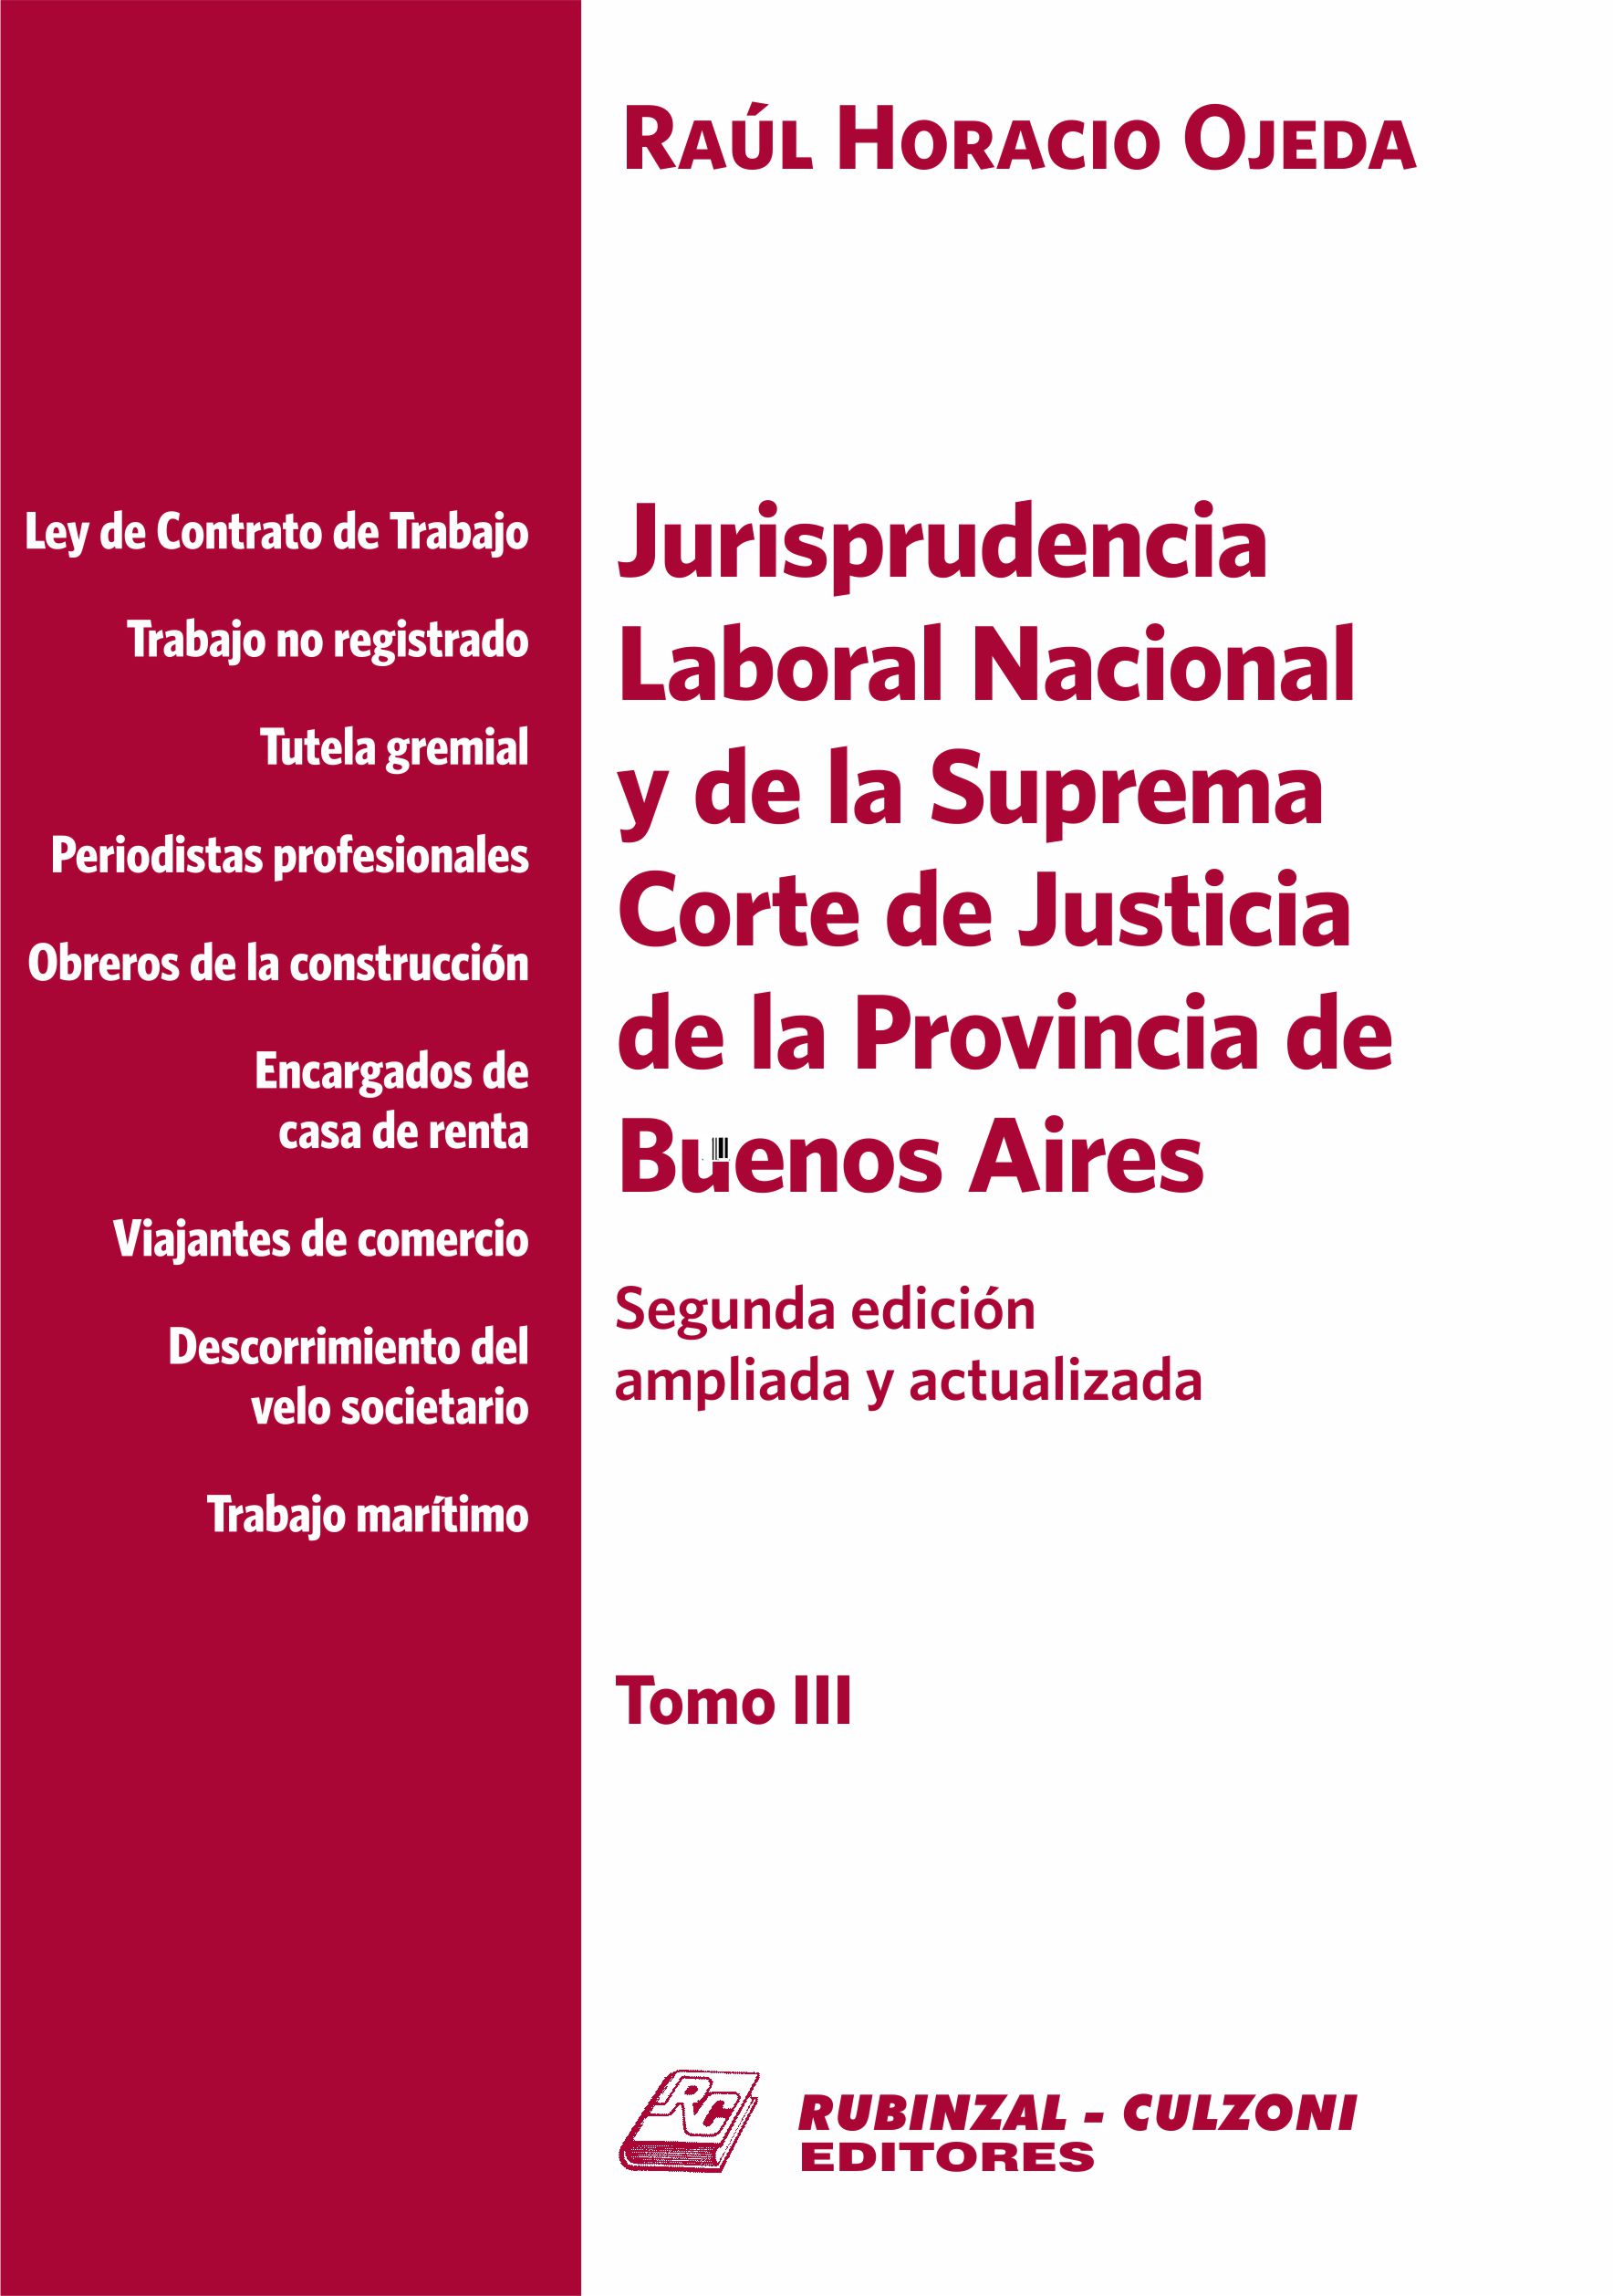 Jurisprudencia Laboral Nacional y de la Suprema Corte de Justicia de la Provincia de Buenos Aires - Tomo III